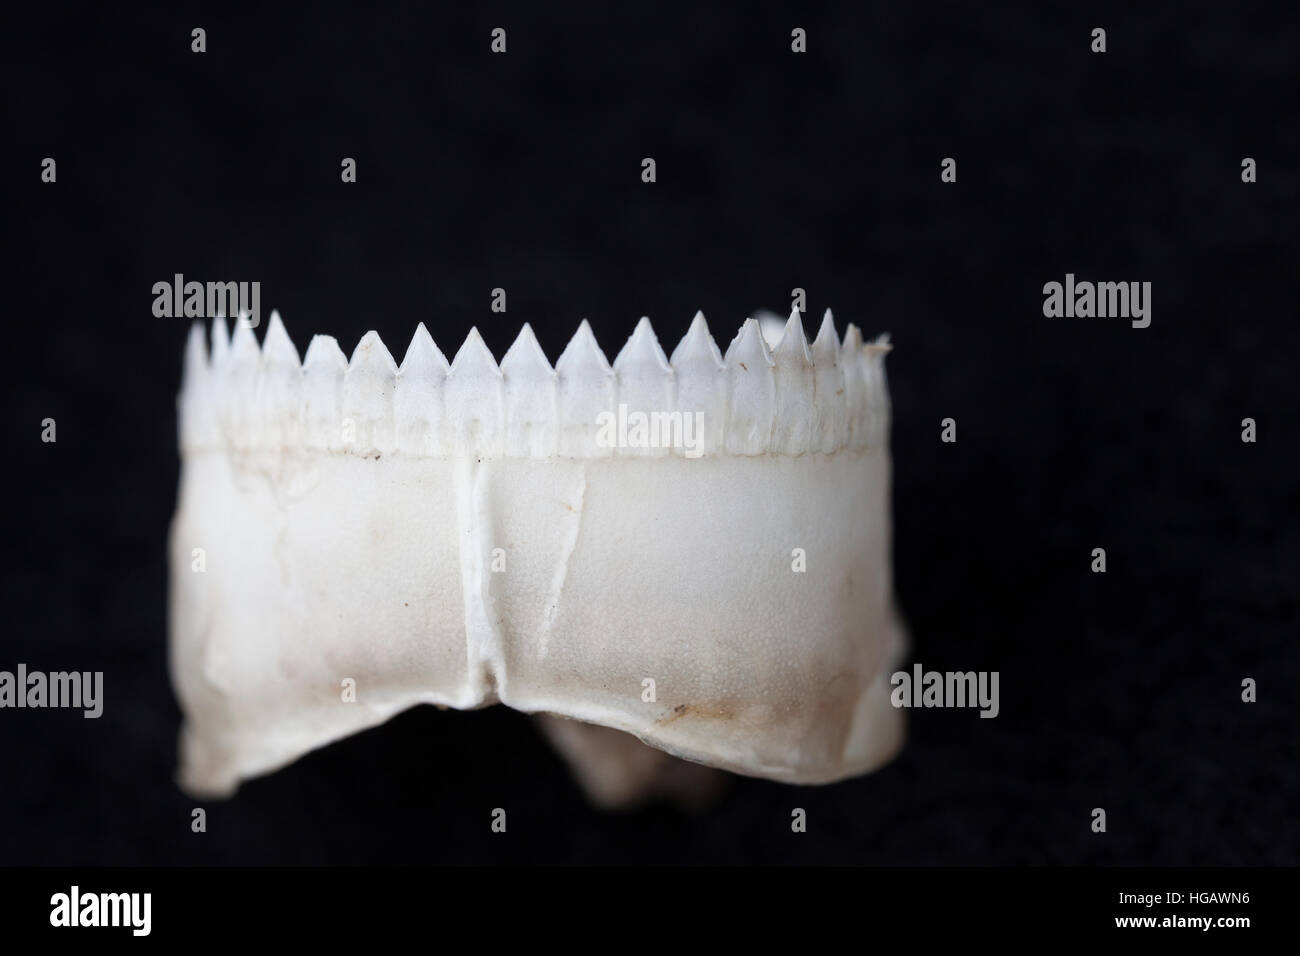 Dans les dents de la mâchoire inférieure d'un petit emporte-pièce, requin Isistius brasiliensis, retrouvés dans l'estomac d'un espadon broadbill Banque D'Images